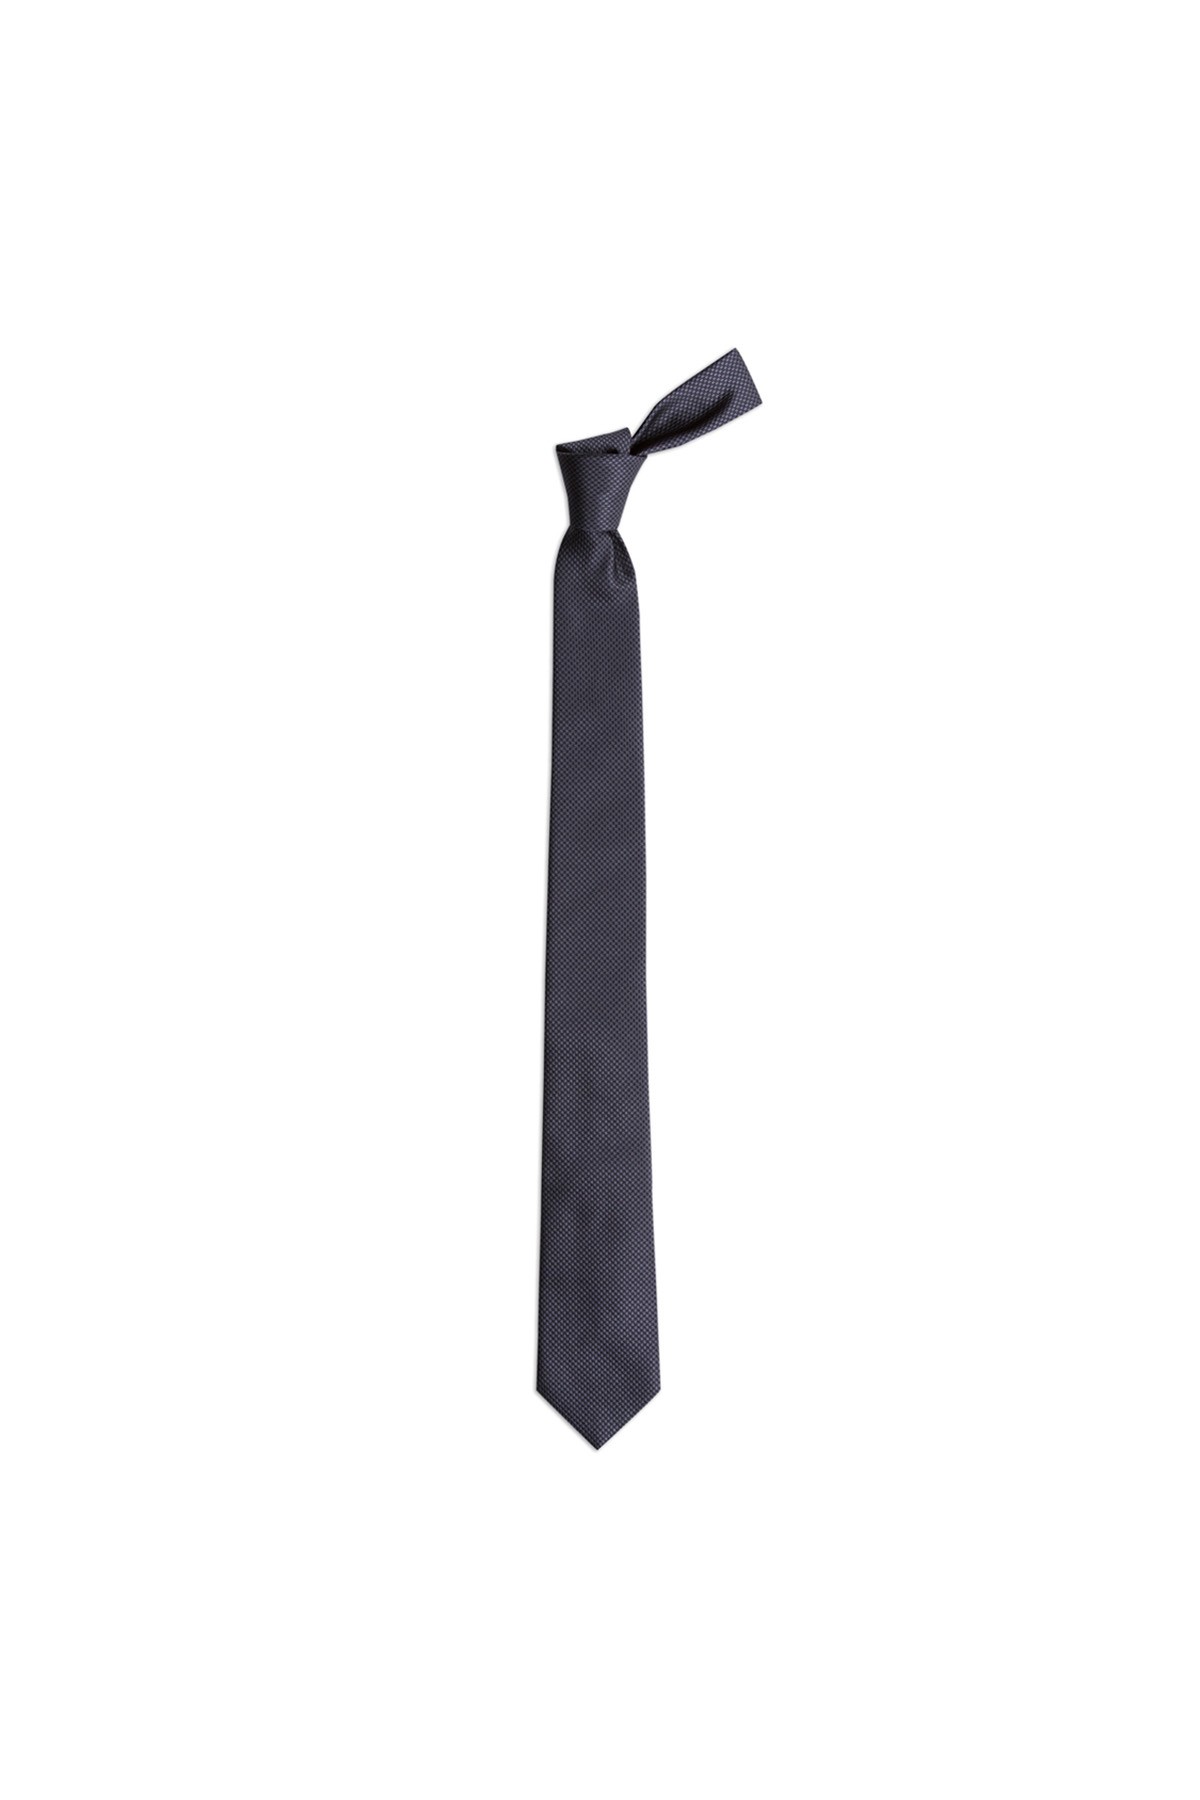 6 cm genişliğinde ince ipek kravat - Koyu gri